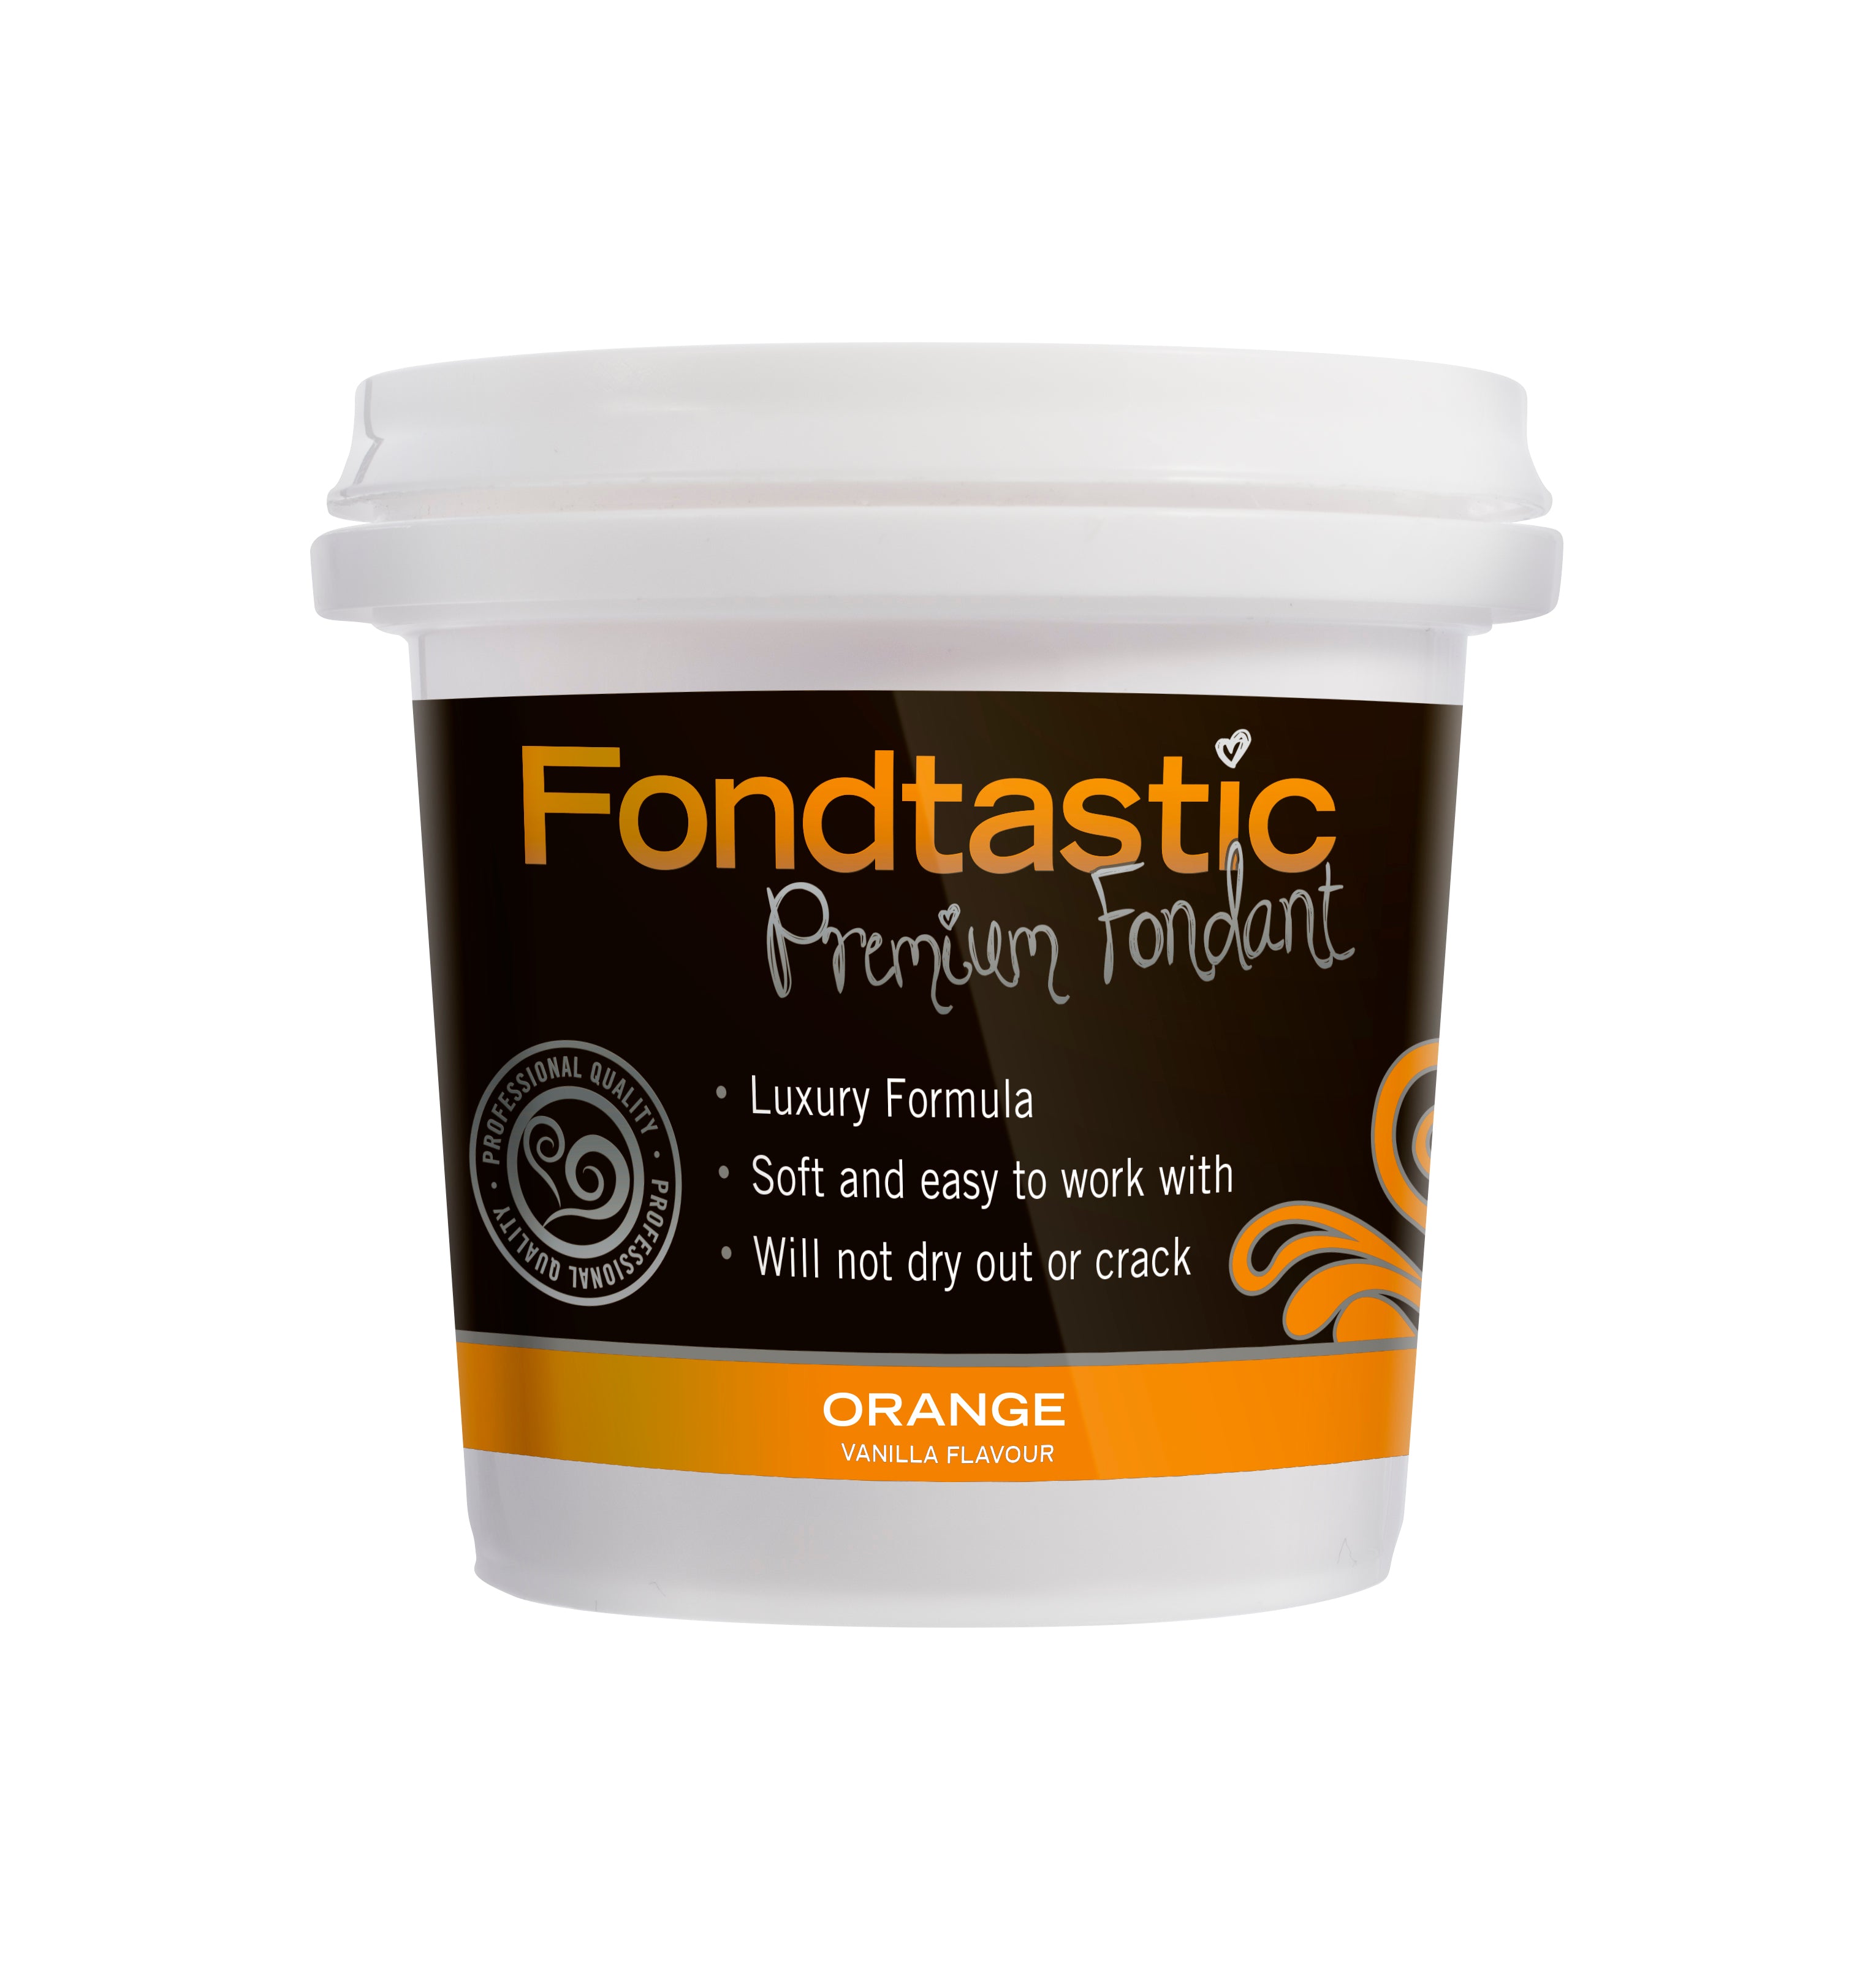 Fondtastic Premium Fondant - Orange 225g